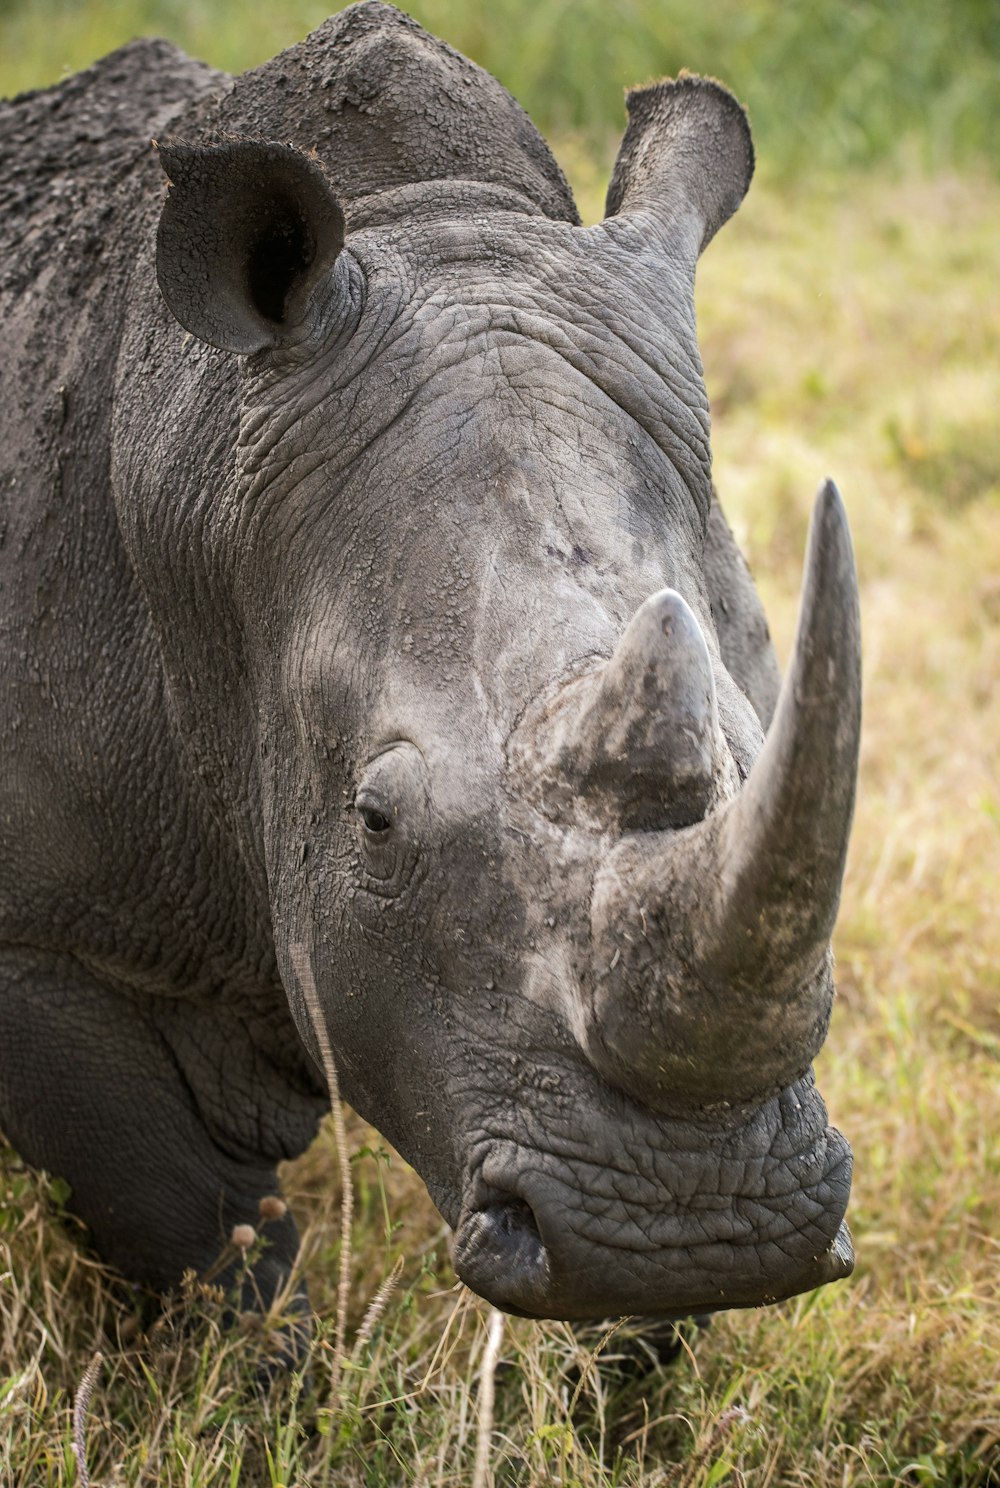 Primer plano del rinoceronte gris en la hierba verde